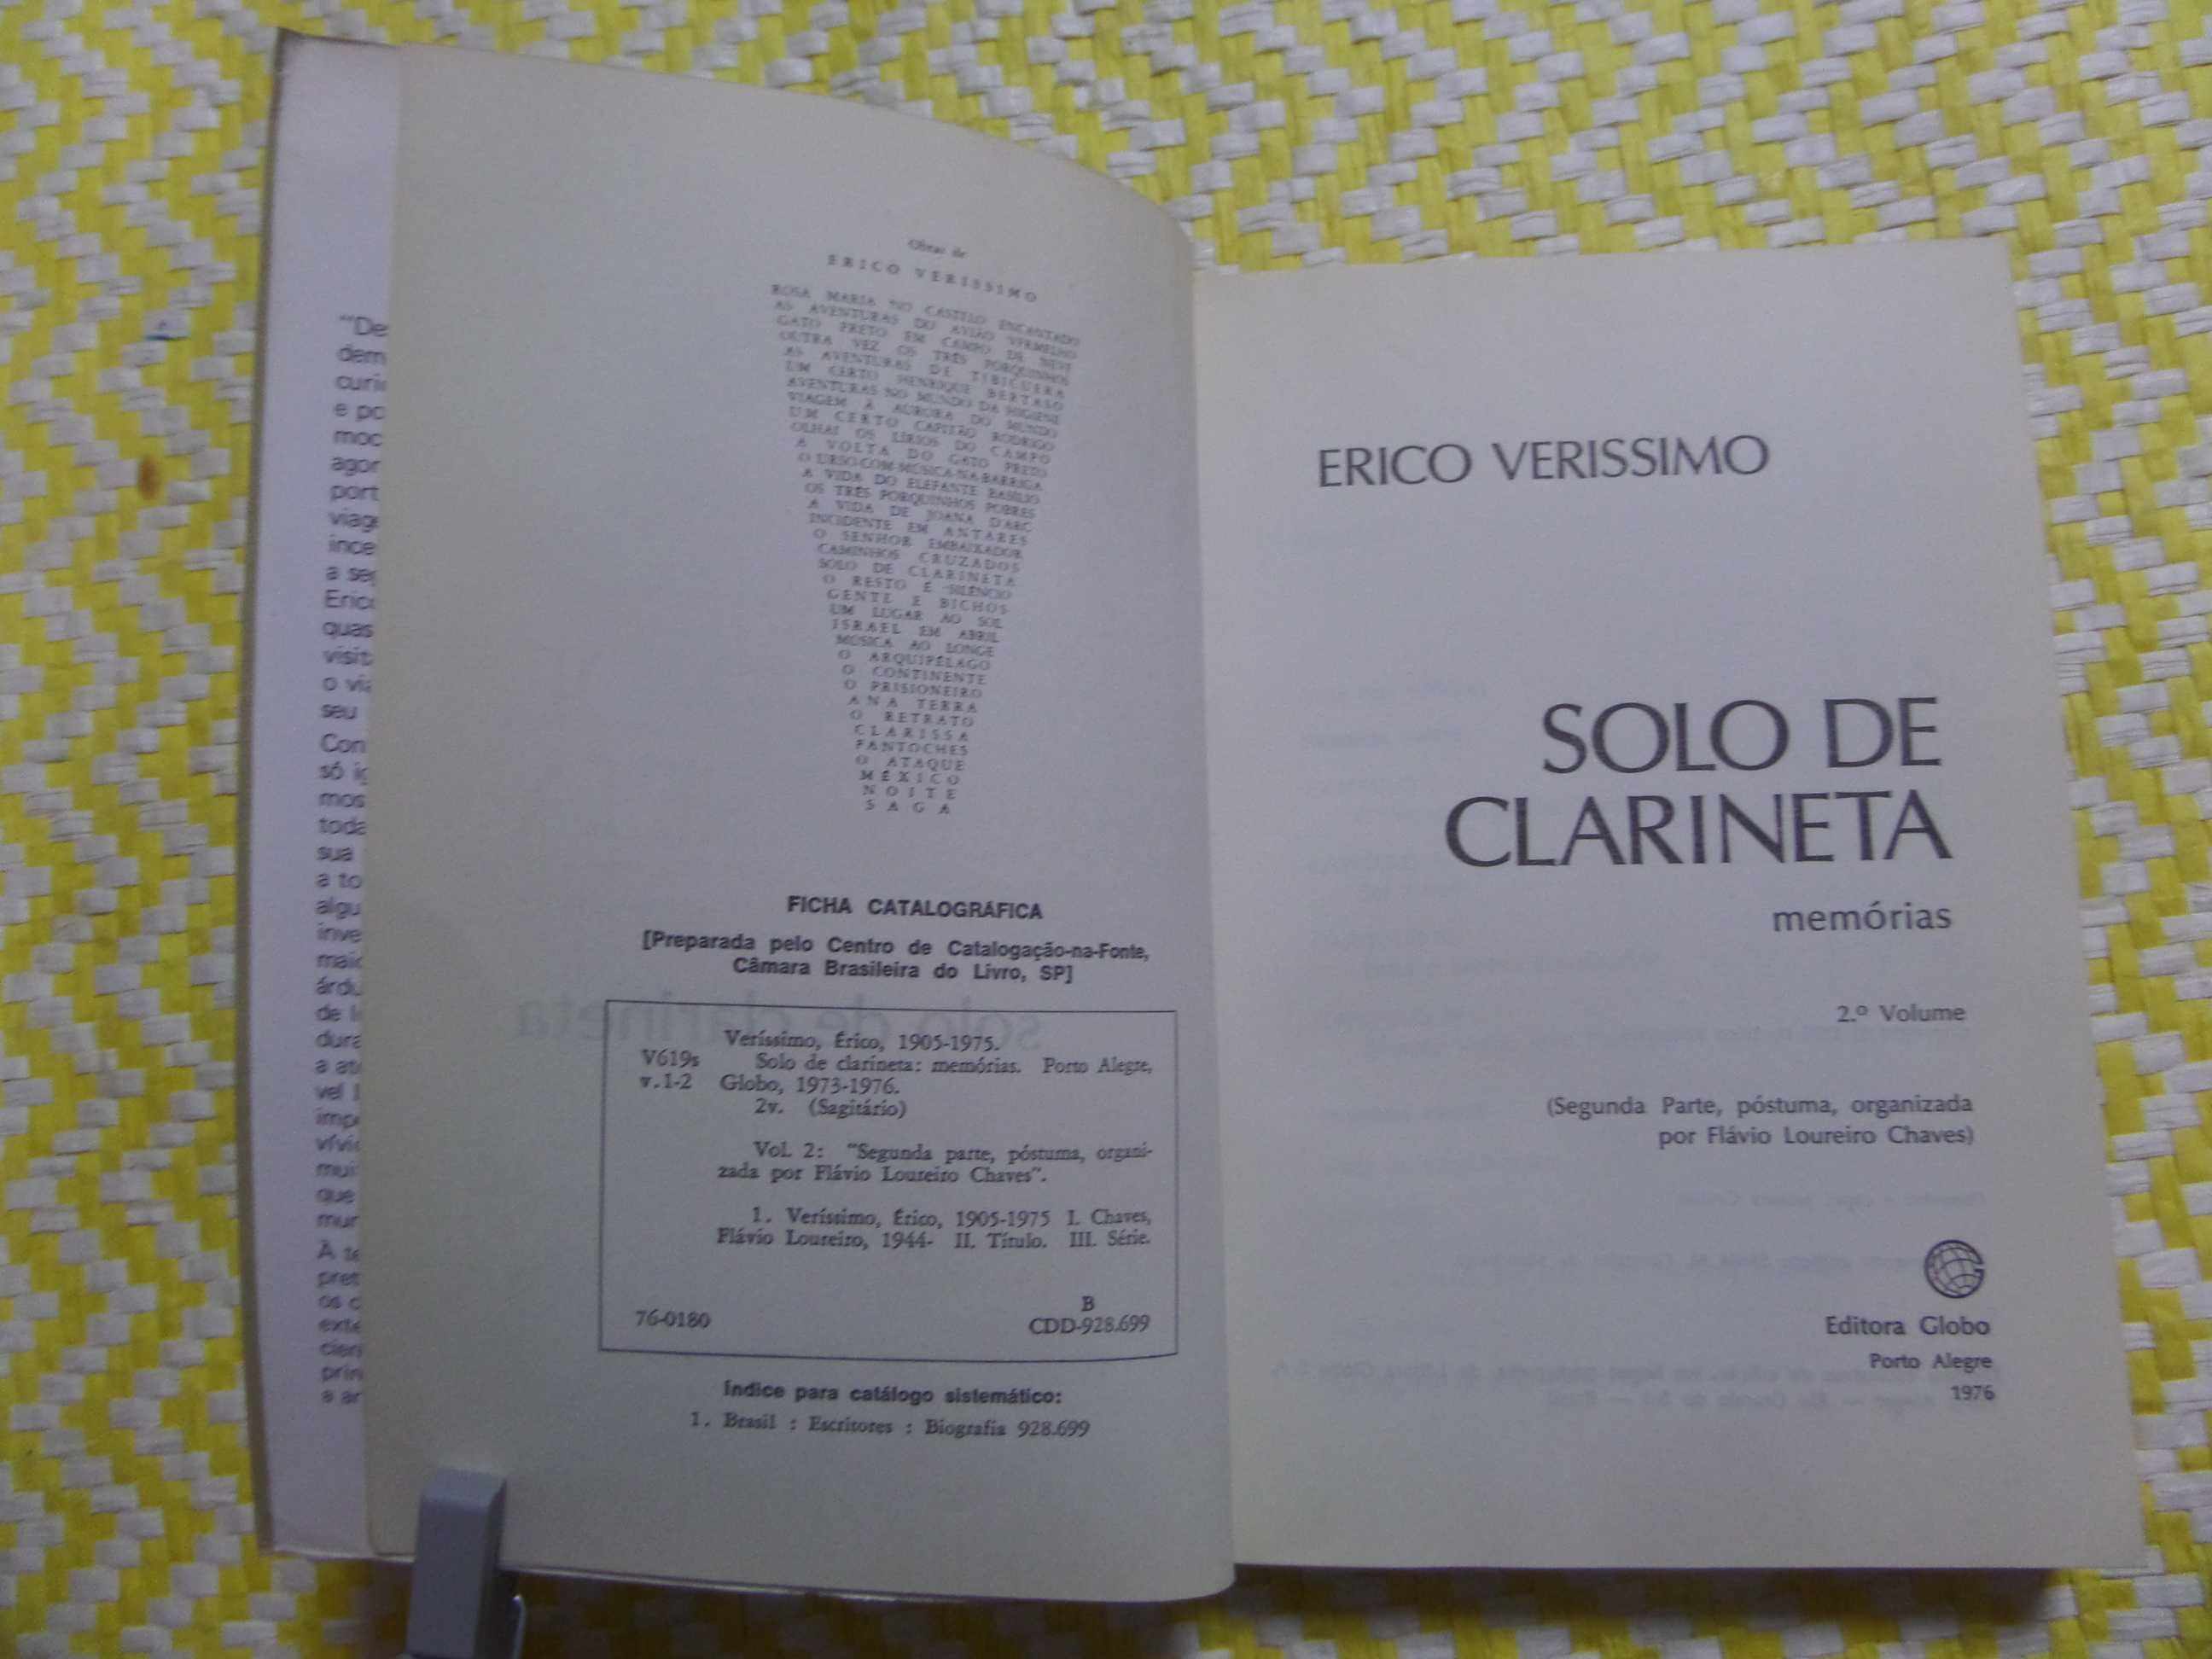 SOLO DE CLARINETA- Memórias - 2º Volume
Erico Veríssimo